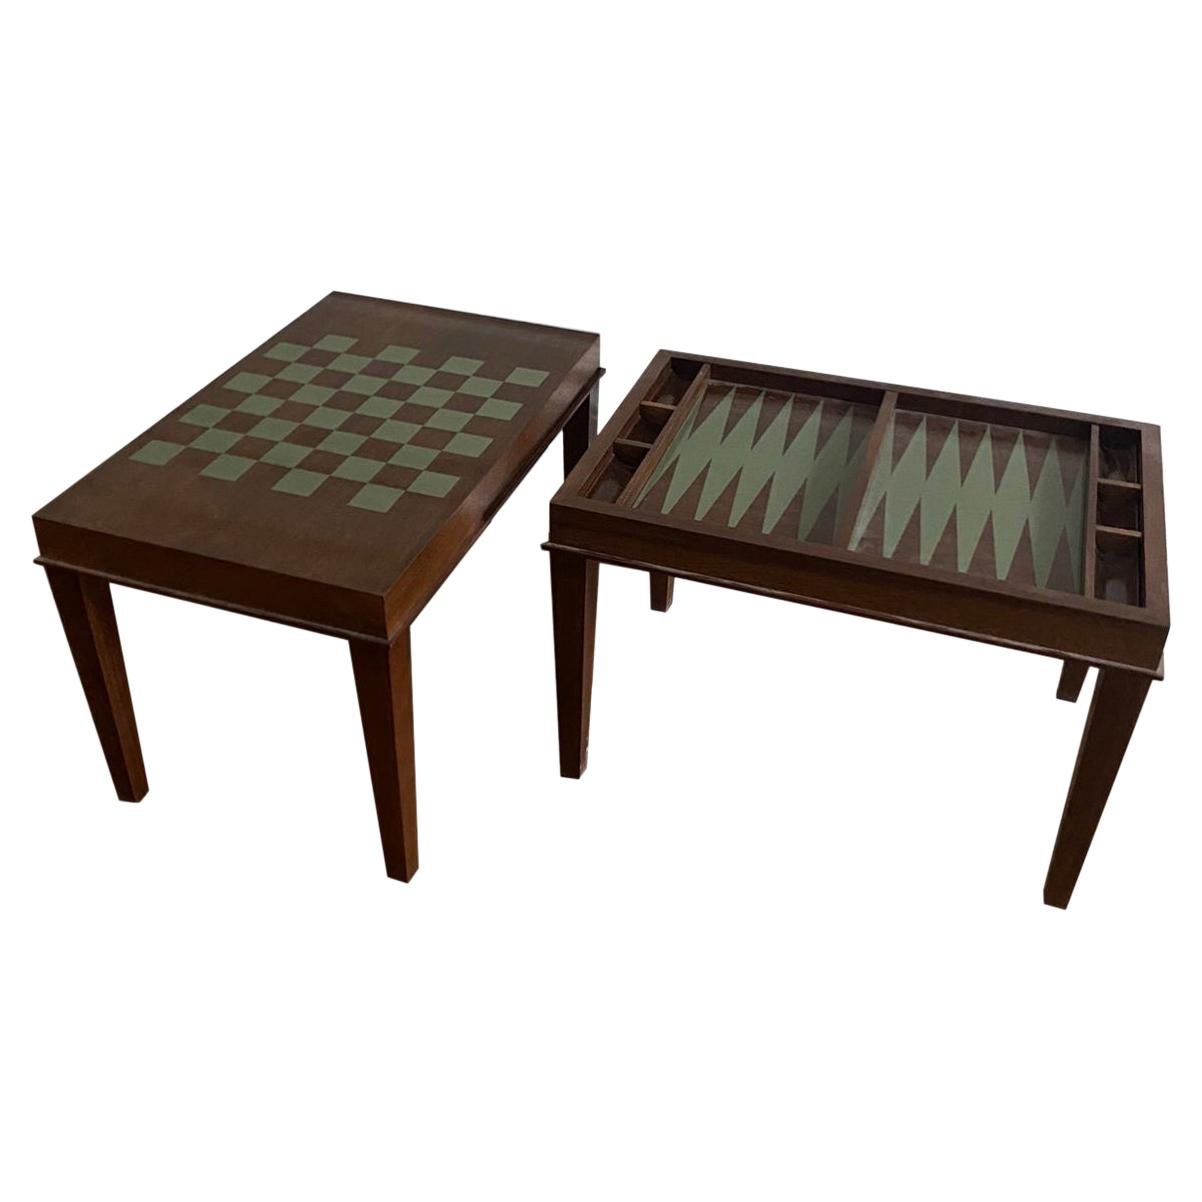 Bemalte Schach- und Backgammon-Spieltische